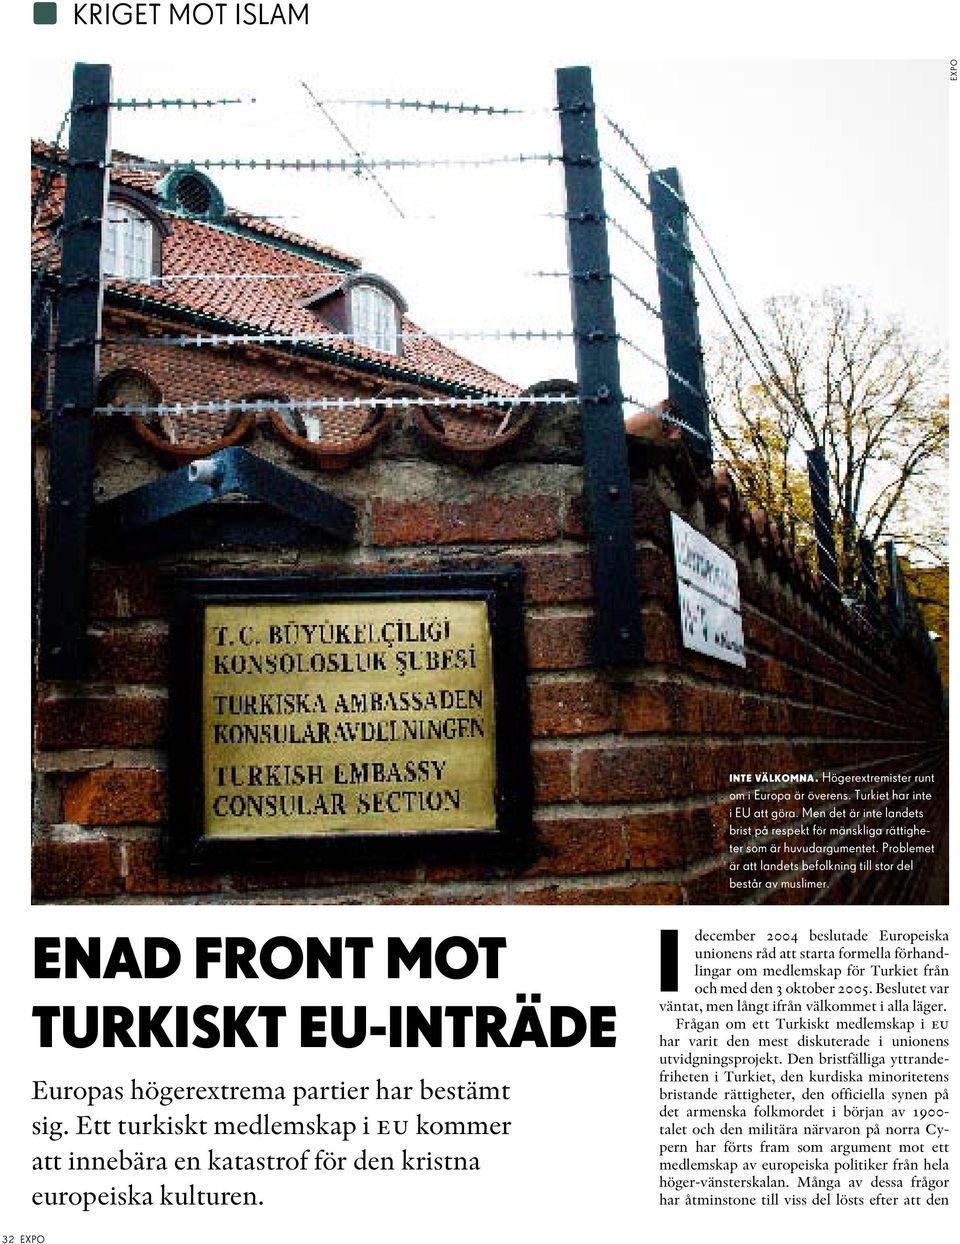 Enad front mot Turkiskt EU-inträde Europas högerextrema partier har bestämt sig. Ett turkiskt medlemskap i eu kommer att innebära en katastrof för den kristna europeiska kulturen.